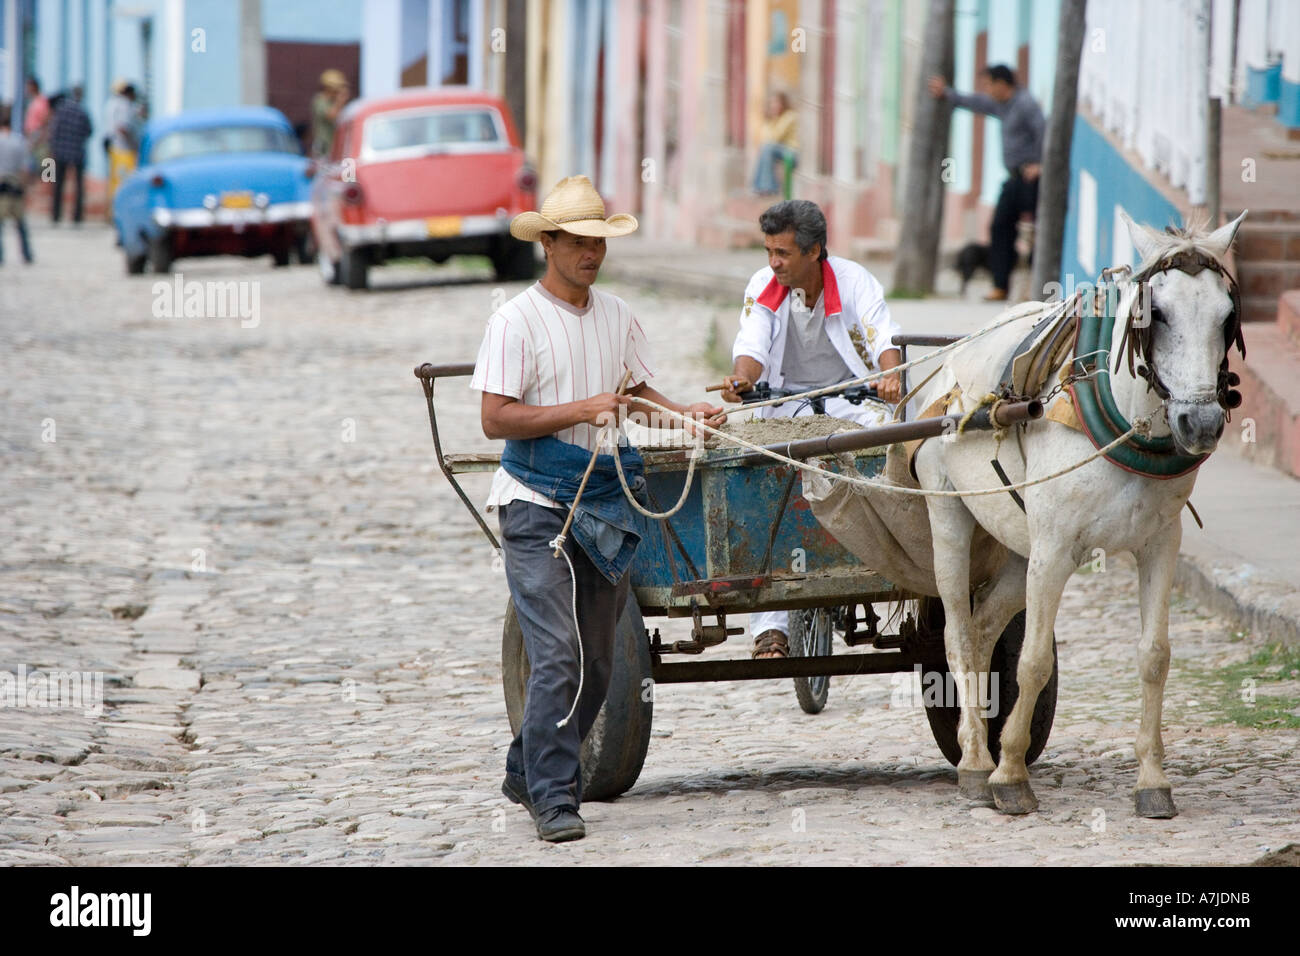 Kubanische führt Mörtel - geladenen Wagen auf einer gepflasterten Straße in Trinidad, Kuba: Zigarre rauchen Radfahrer auf Rückseite. Stockfoto